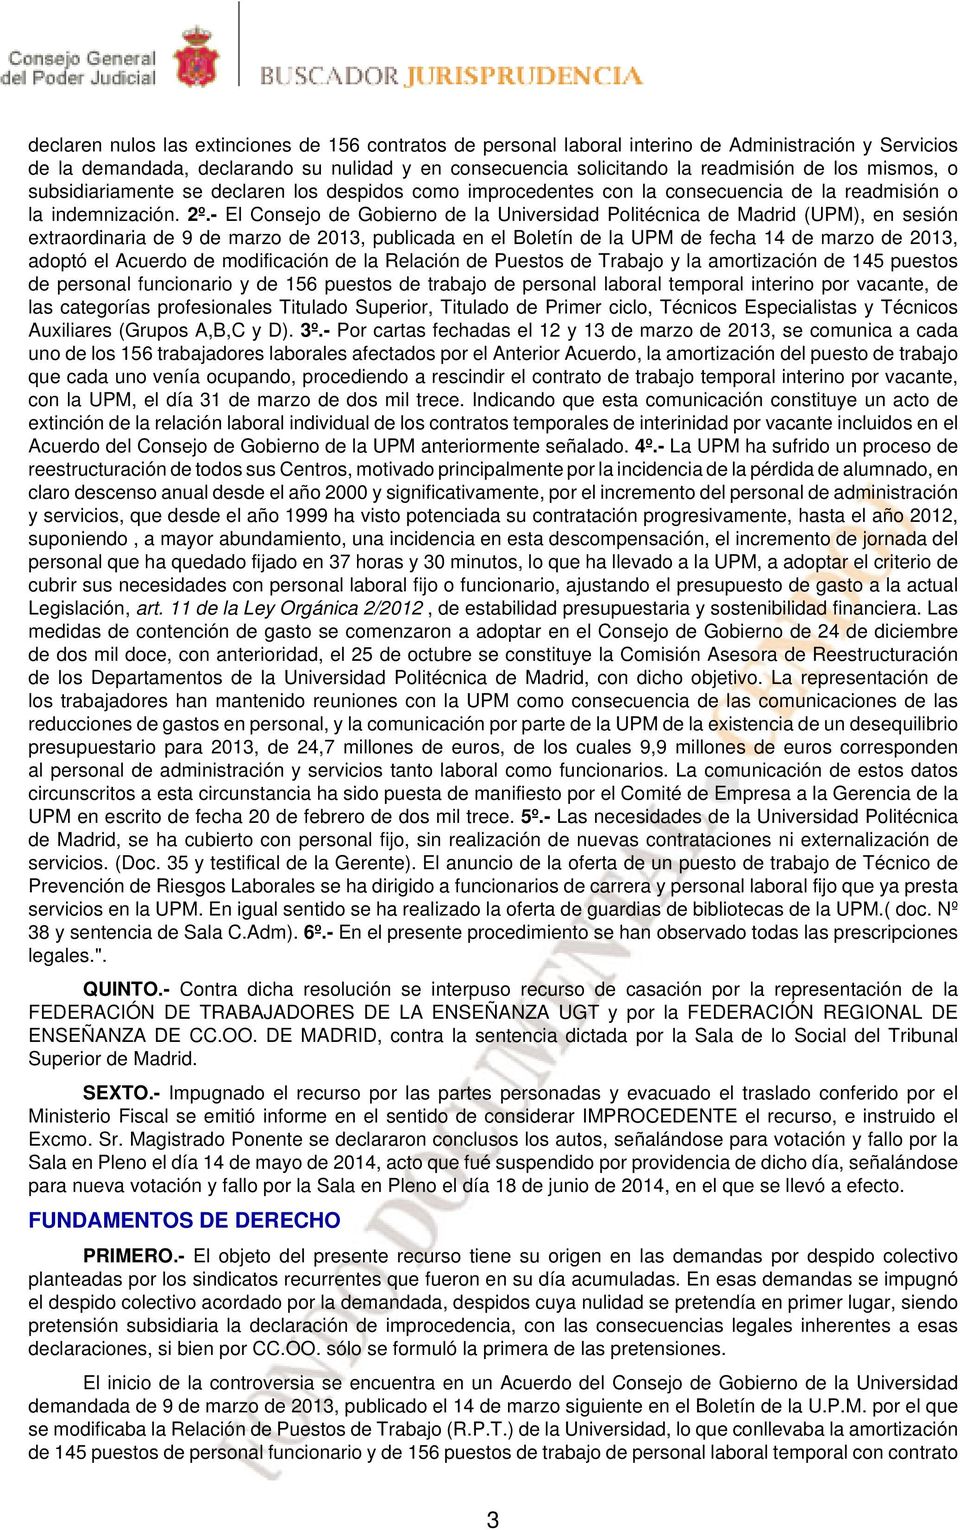 - El Consejo de Gobierno de la Universidad Politécnica de Madrid (UPM), en sesión extraordinaria de 9 de marzo de 2013, publicada en el Boletín de la UPM de fecha 14 de marzo de 2013, adoptó el